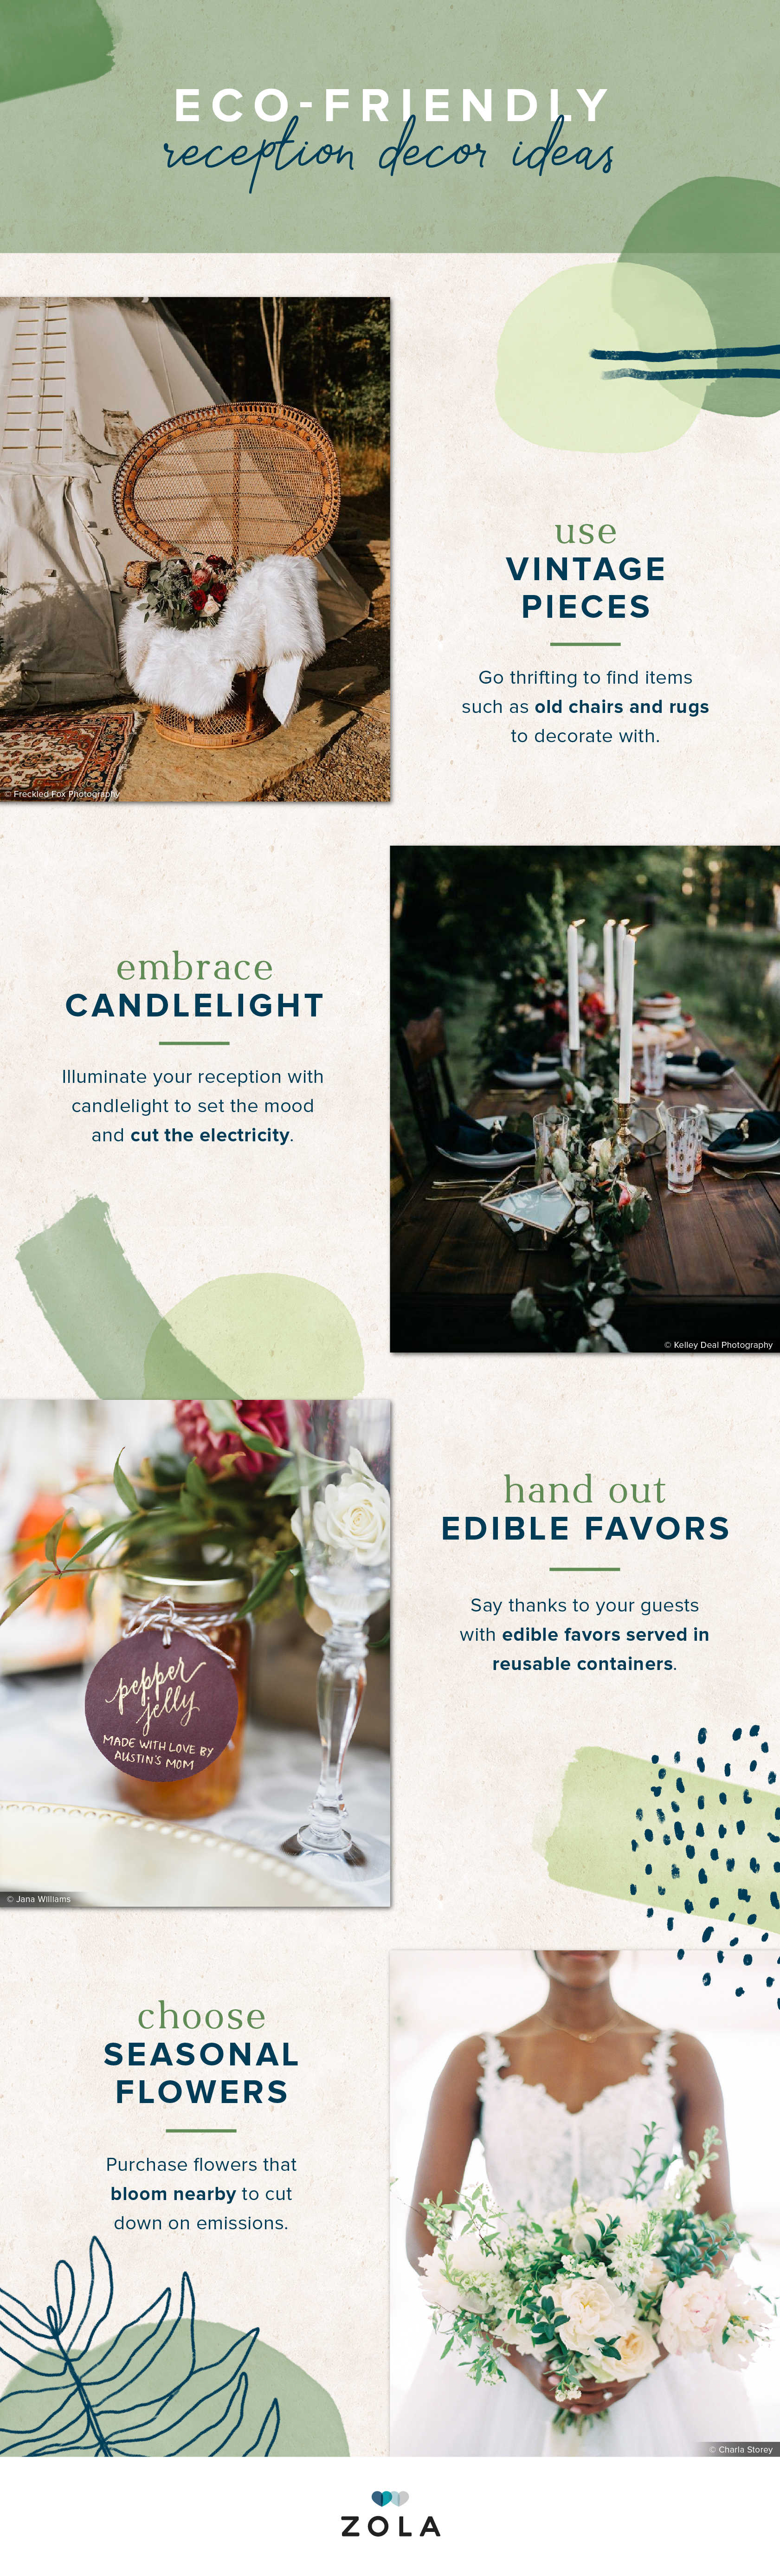 eco-friendly-wedding-ideas-reception